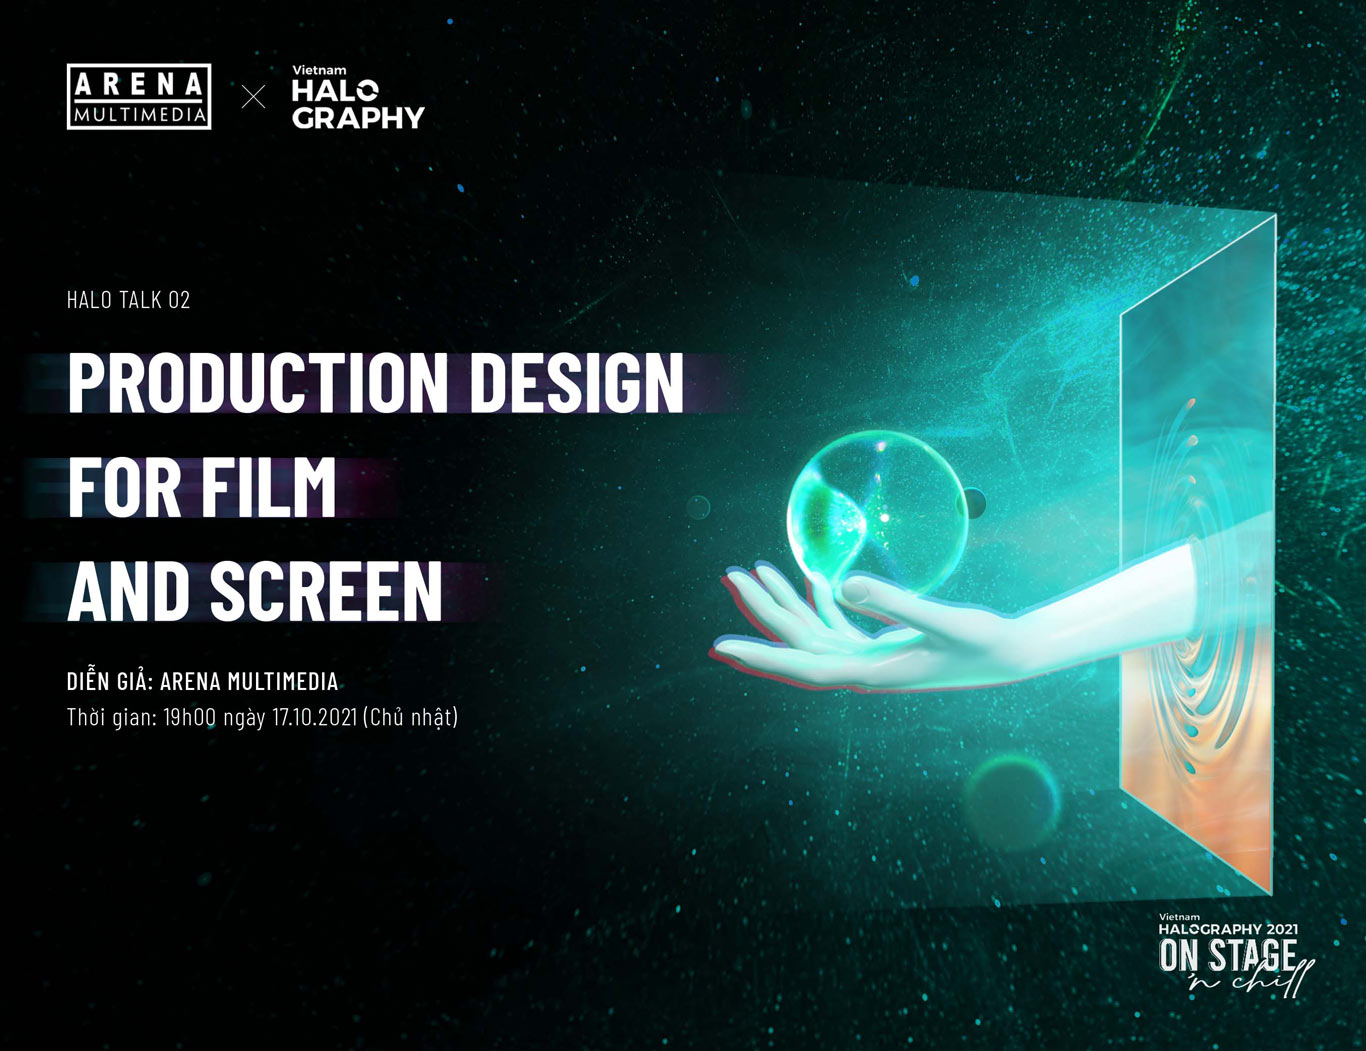 Halo Talk: PRODUCTION DESIGN for Film and Screen - Hiện thực hóa trường quay từ trí tưởng tượng